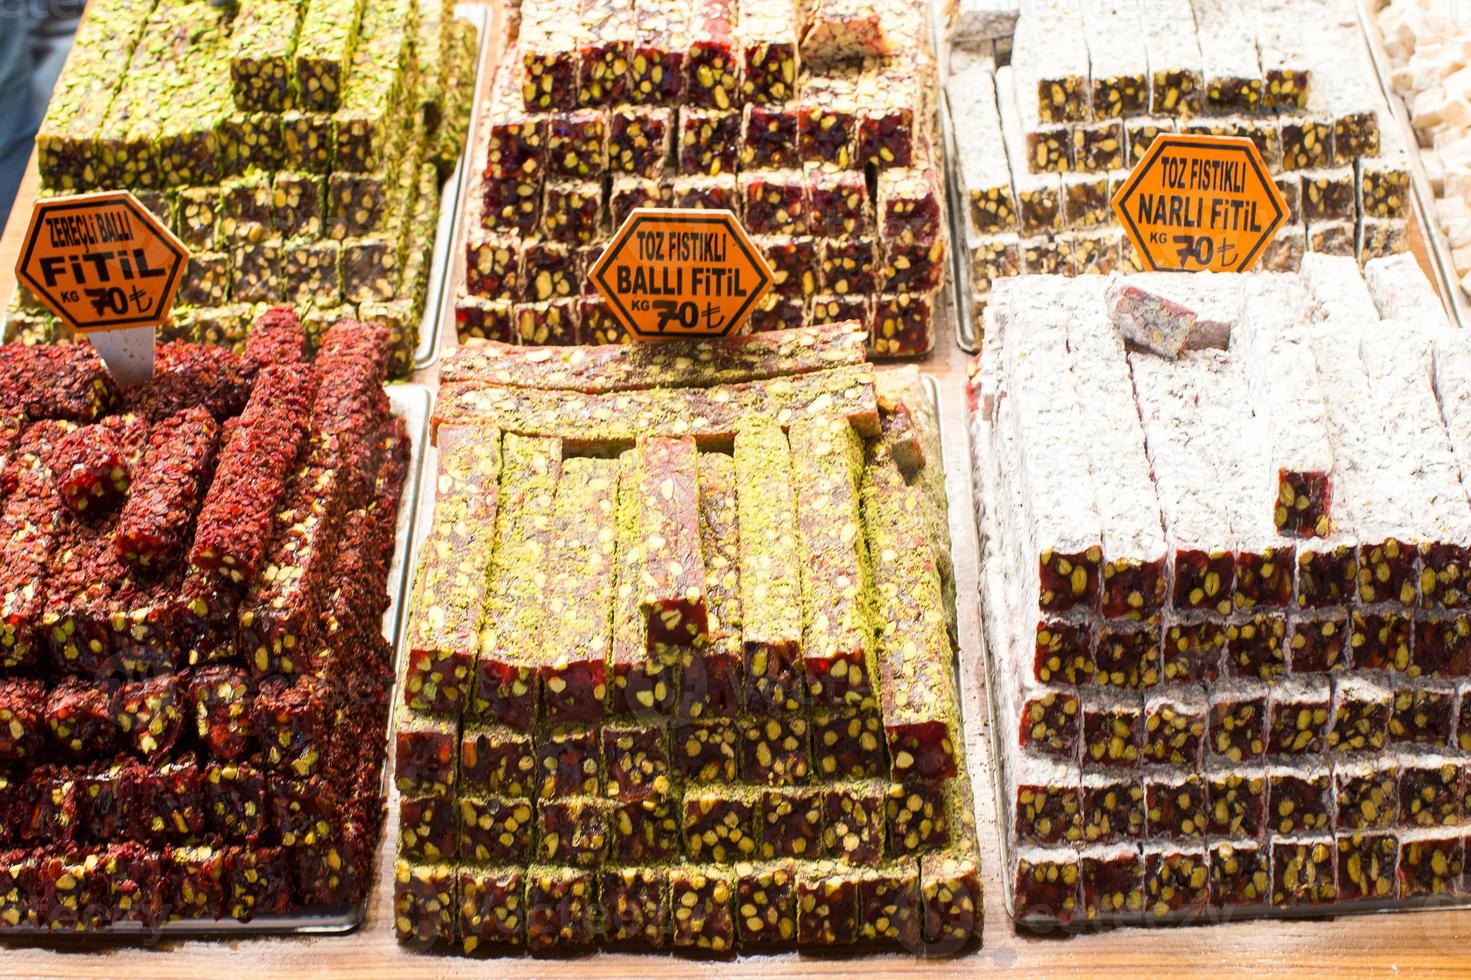 Dulces tradicionales turcos en el bazar egipcio de Estambul foto